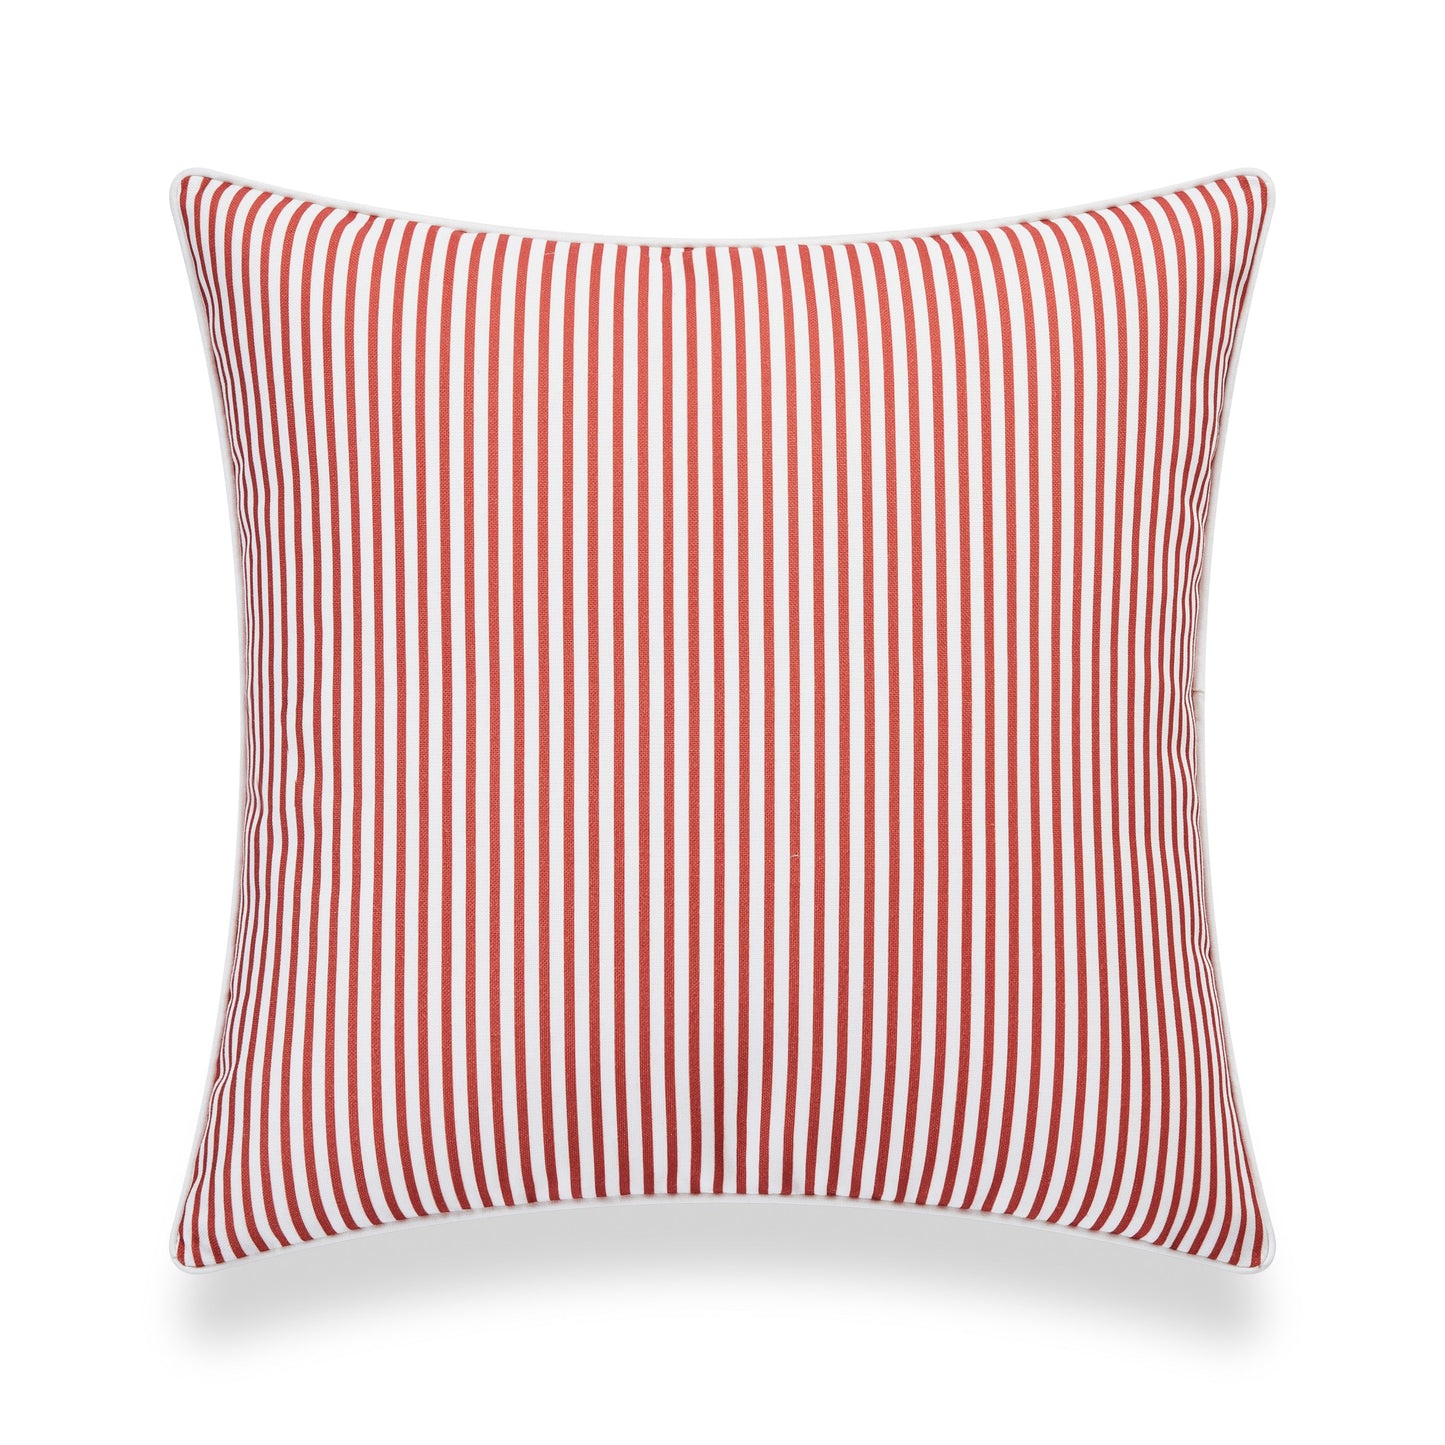 Coastal Indoor Outdoor Pillow Cover, Stripe, Rust Orange, 20"x20"-4